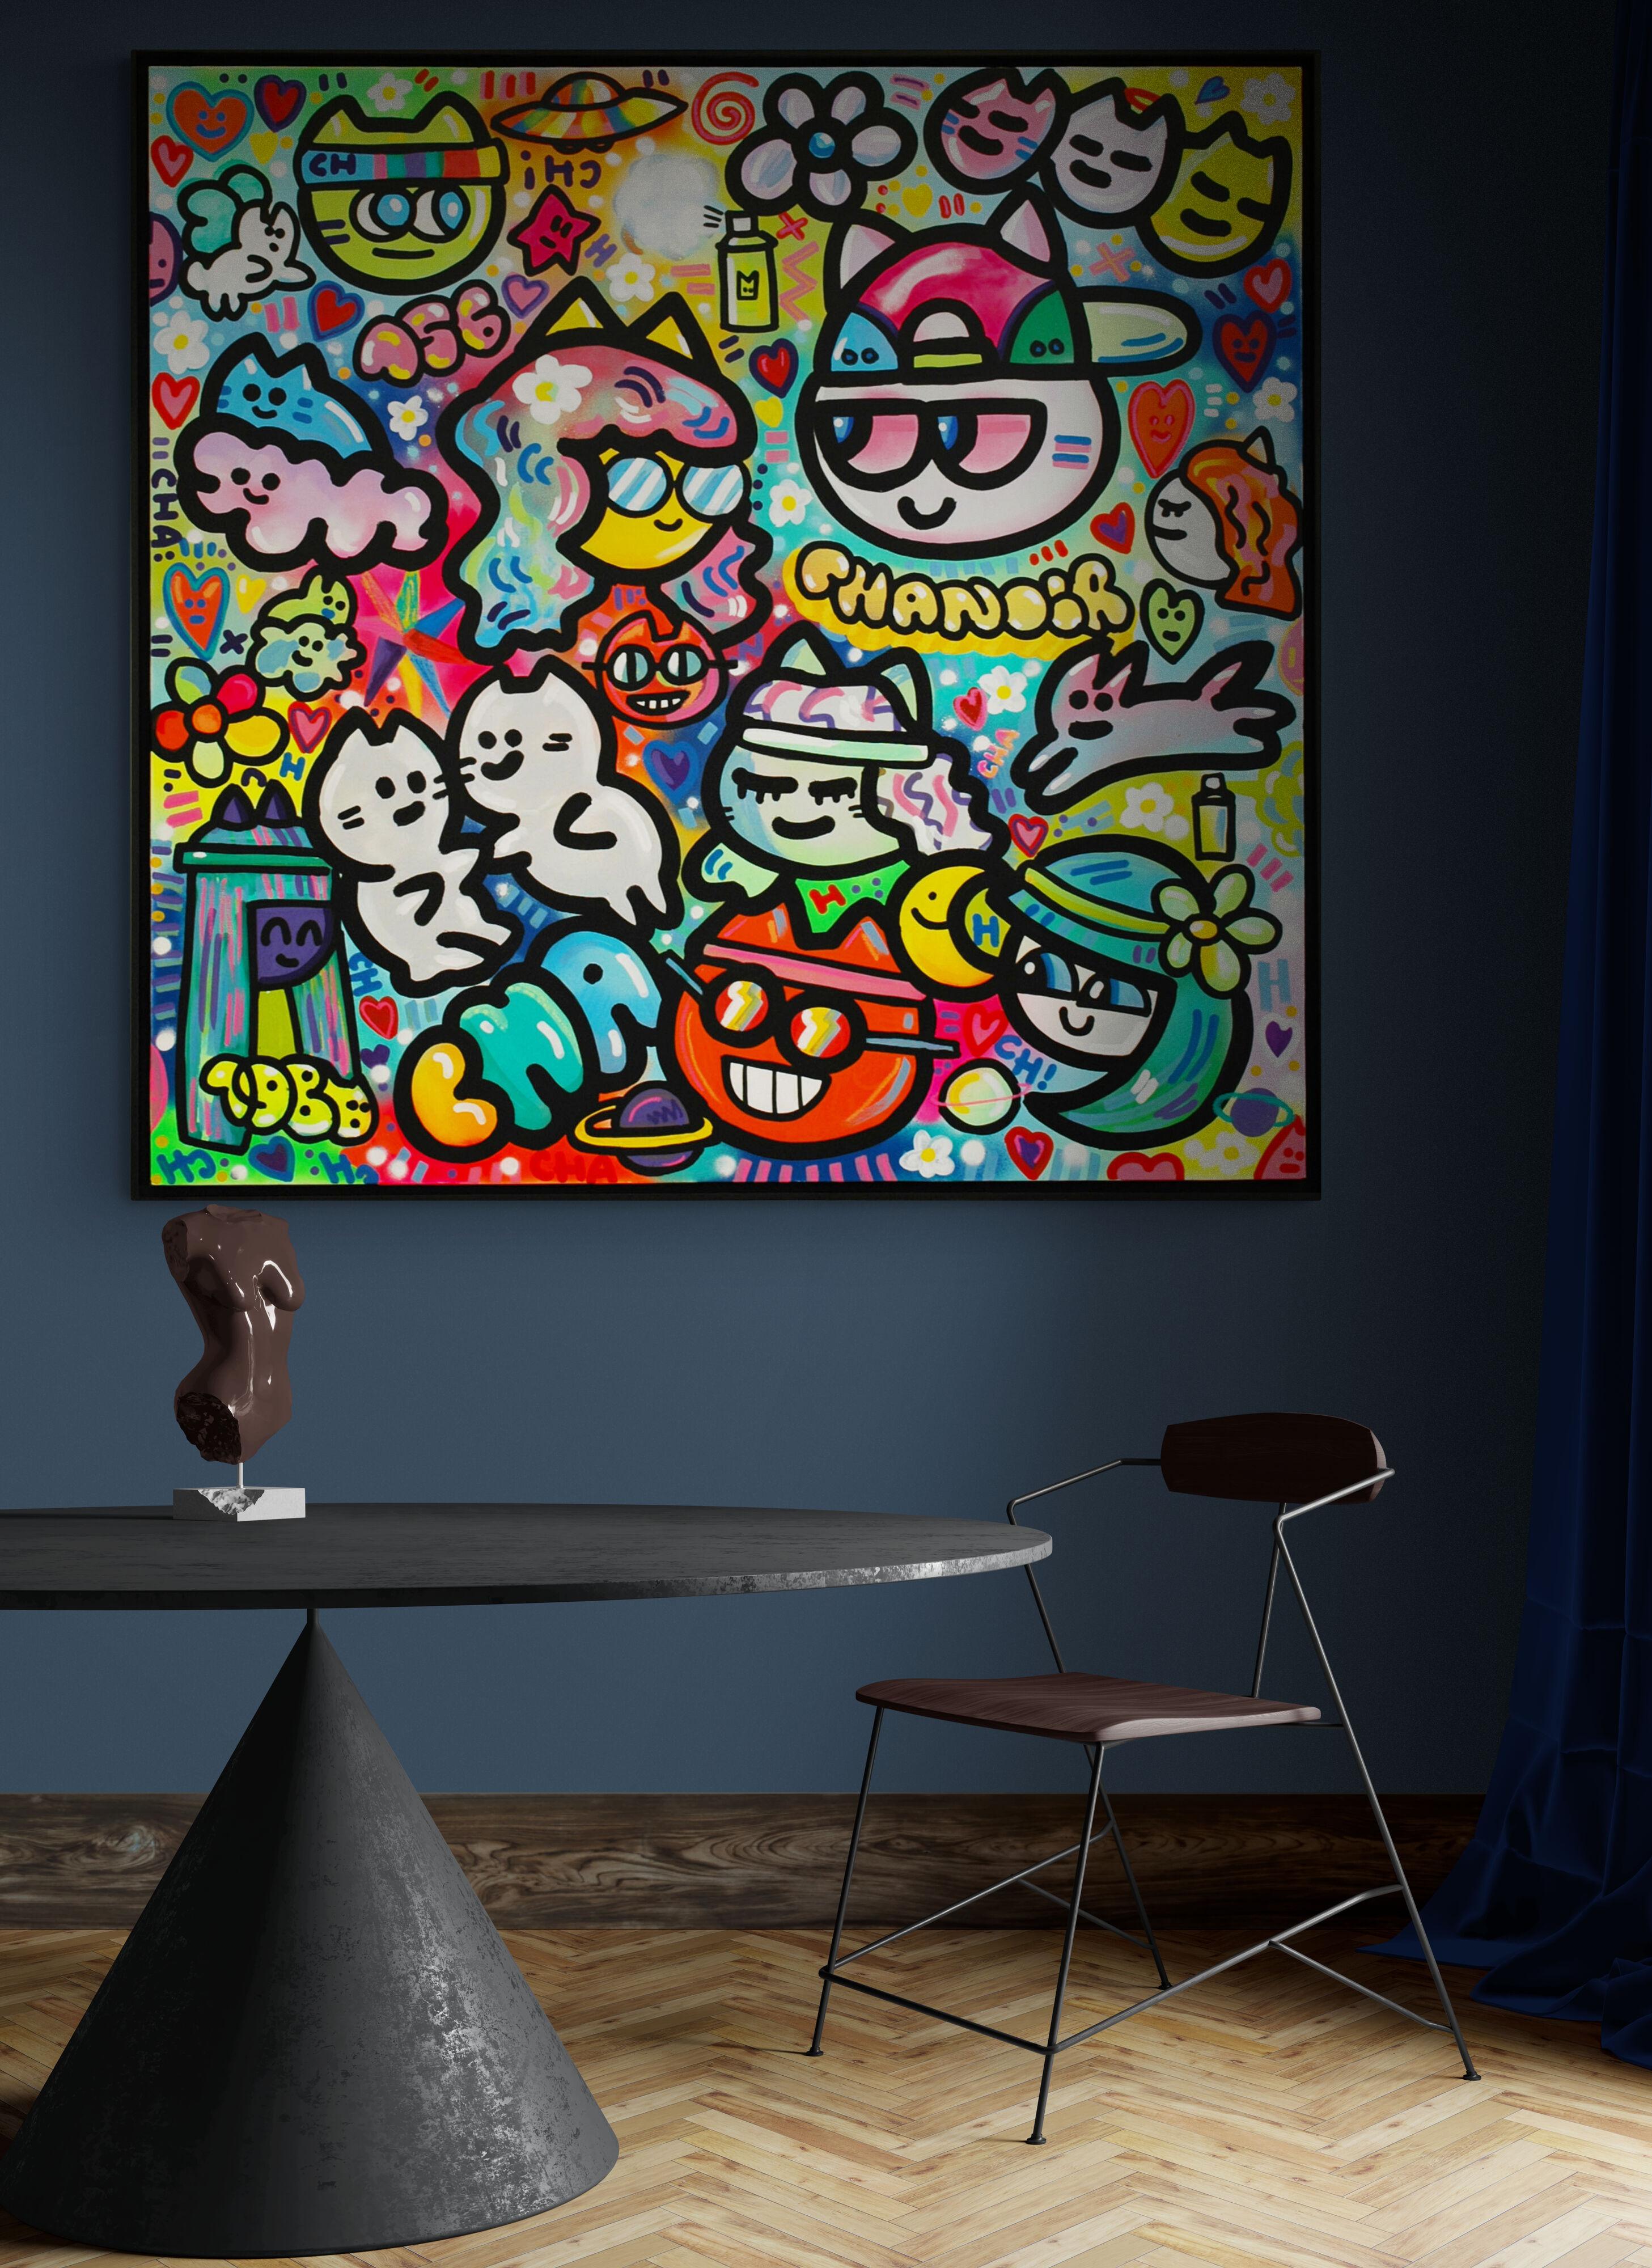 Spray und Acryl auf Leinwand
150 x 150 cm (59,1 x 59,1 Zoll)
Einzigartige Kunstwerke
Schwarzer Holzrahmen (155 x 155 x 4 cm) - (61 x 61 x 1,6 Zoll)
Signiert von der Künstlerin
Echtheitszertifikat